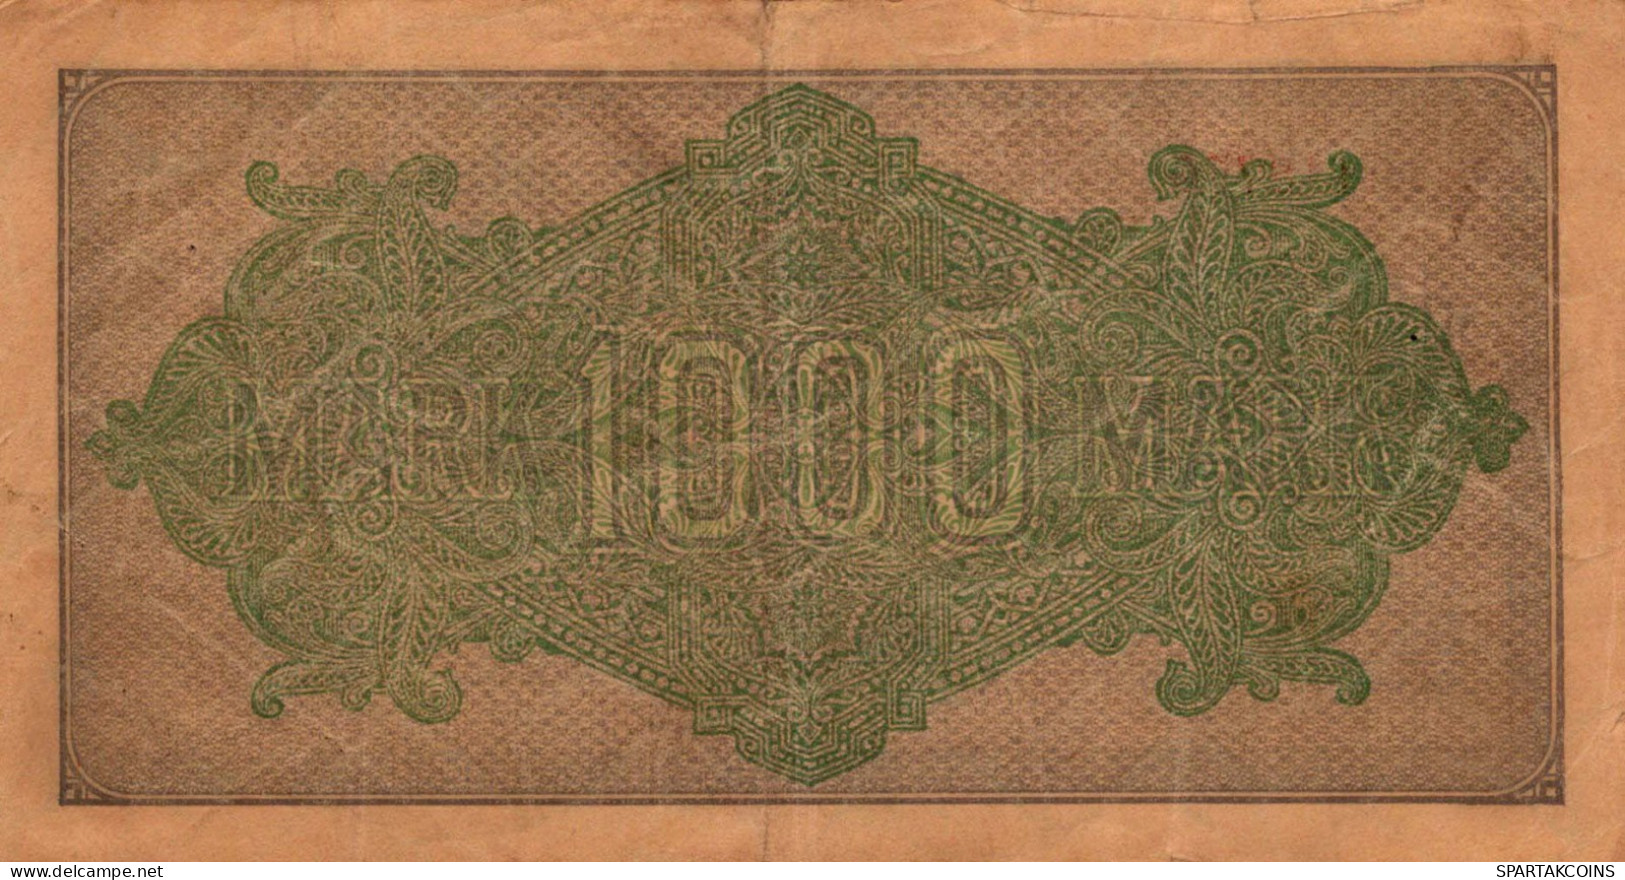 1000 MARK 1922 Stadt BERLIN DEUTSCHLAND Papiergeld Banknote #PL447 - [11] Local Banknote Issues